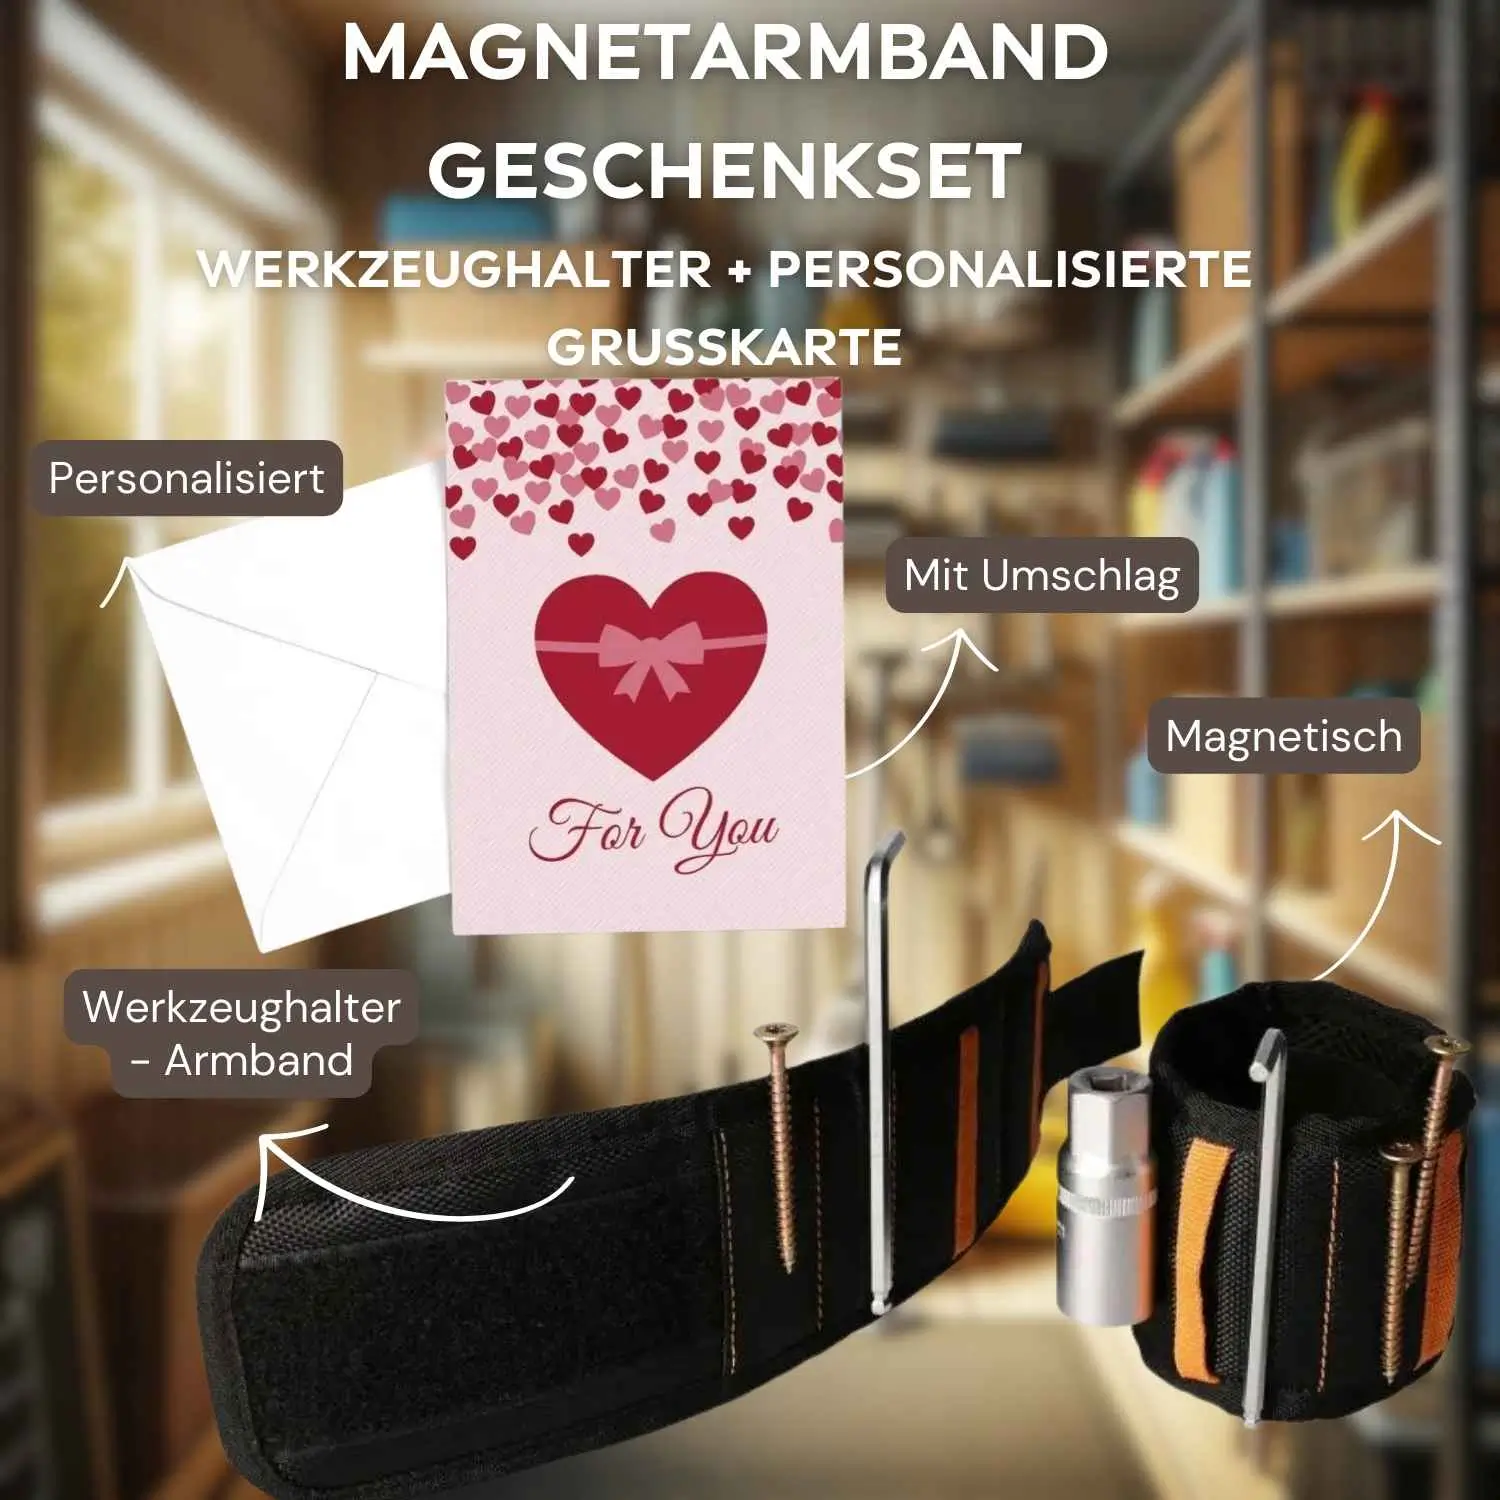 Magnetarmband Geschenkset - Personalisierte Grußkarte